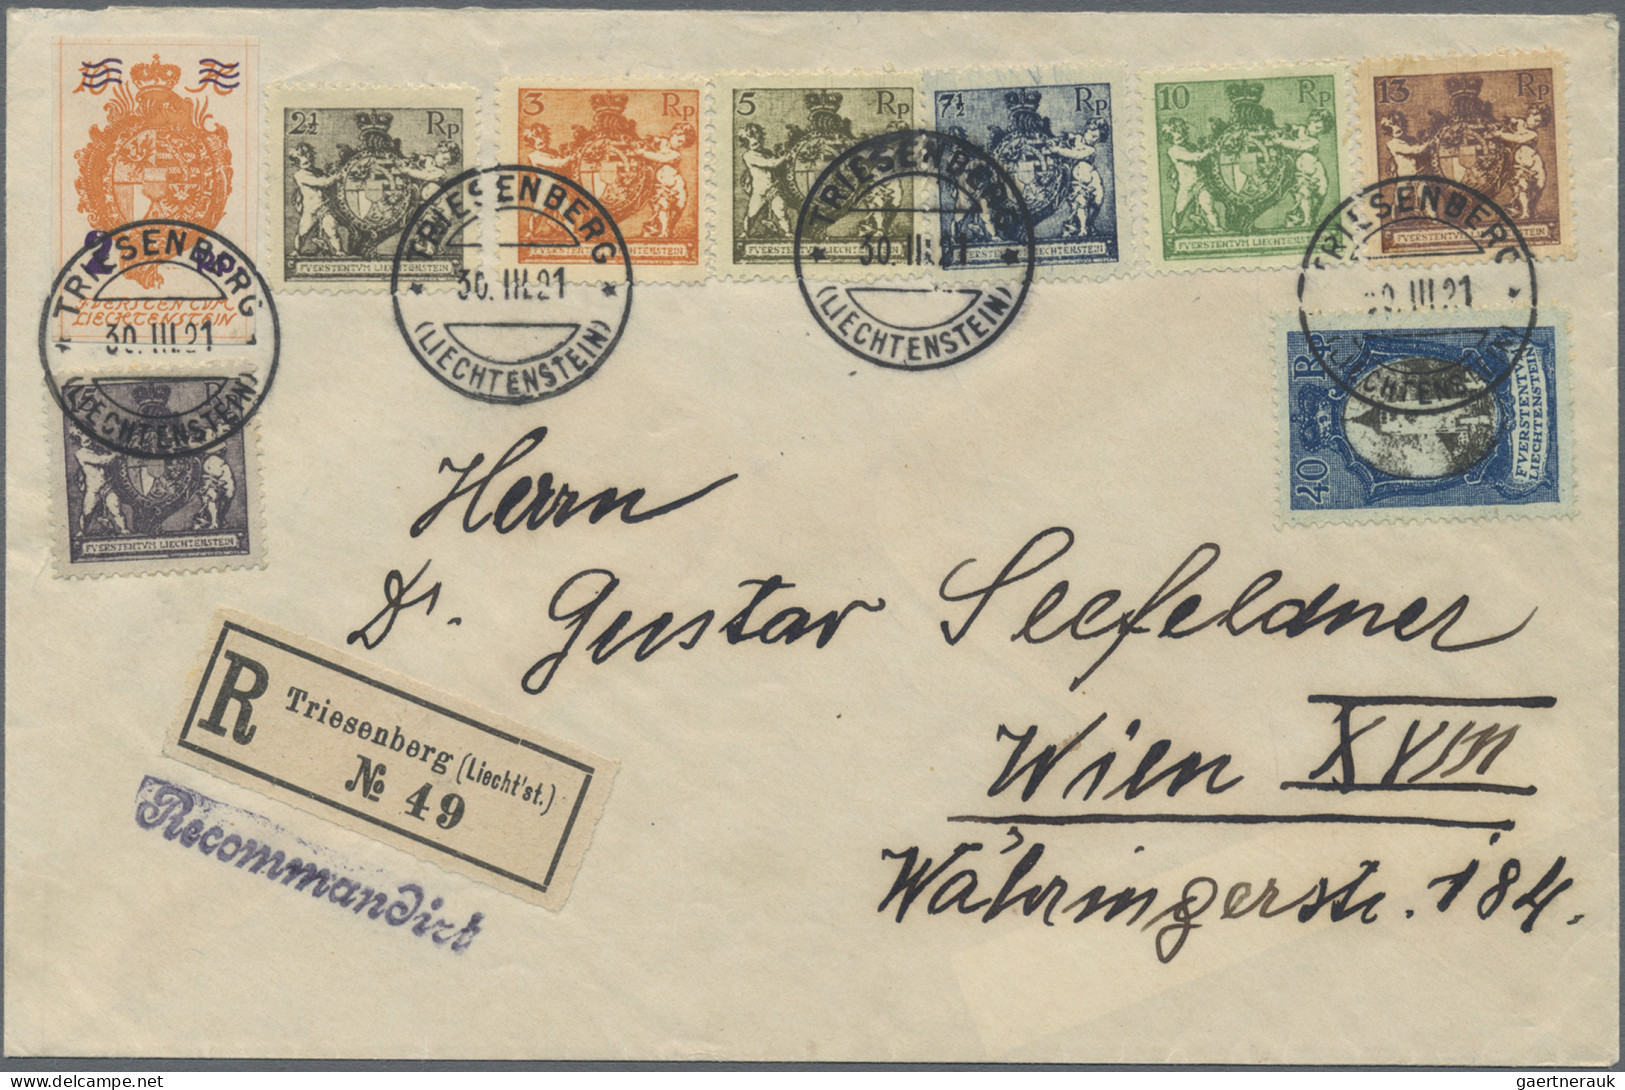 Liechtenstein: 1908/1921, Posten mit 23 zum Teil interessanten Belegen, dabei au